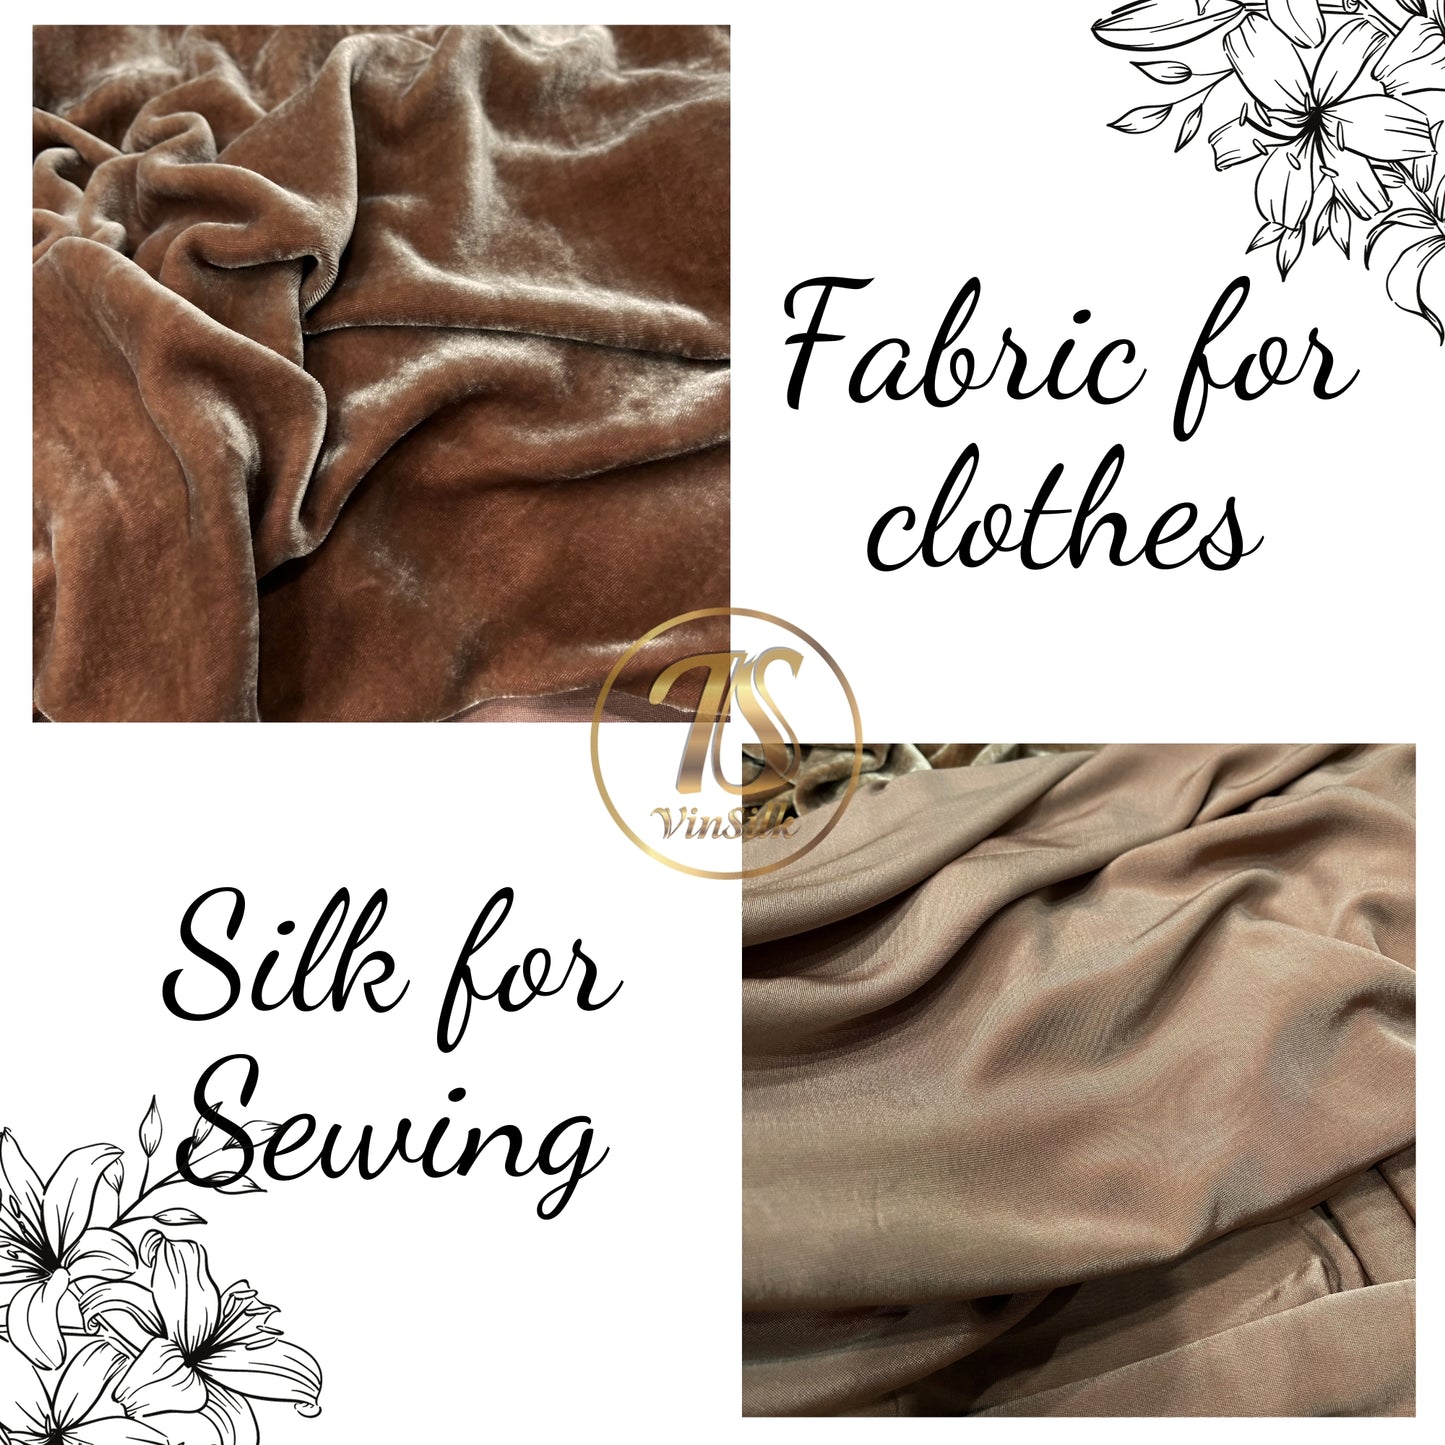 100% Pure Mulberry Silk Velvet Fabric - Luxury Silk Velvet - Silk for sewing - Light Brown Velvet